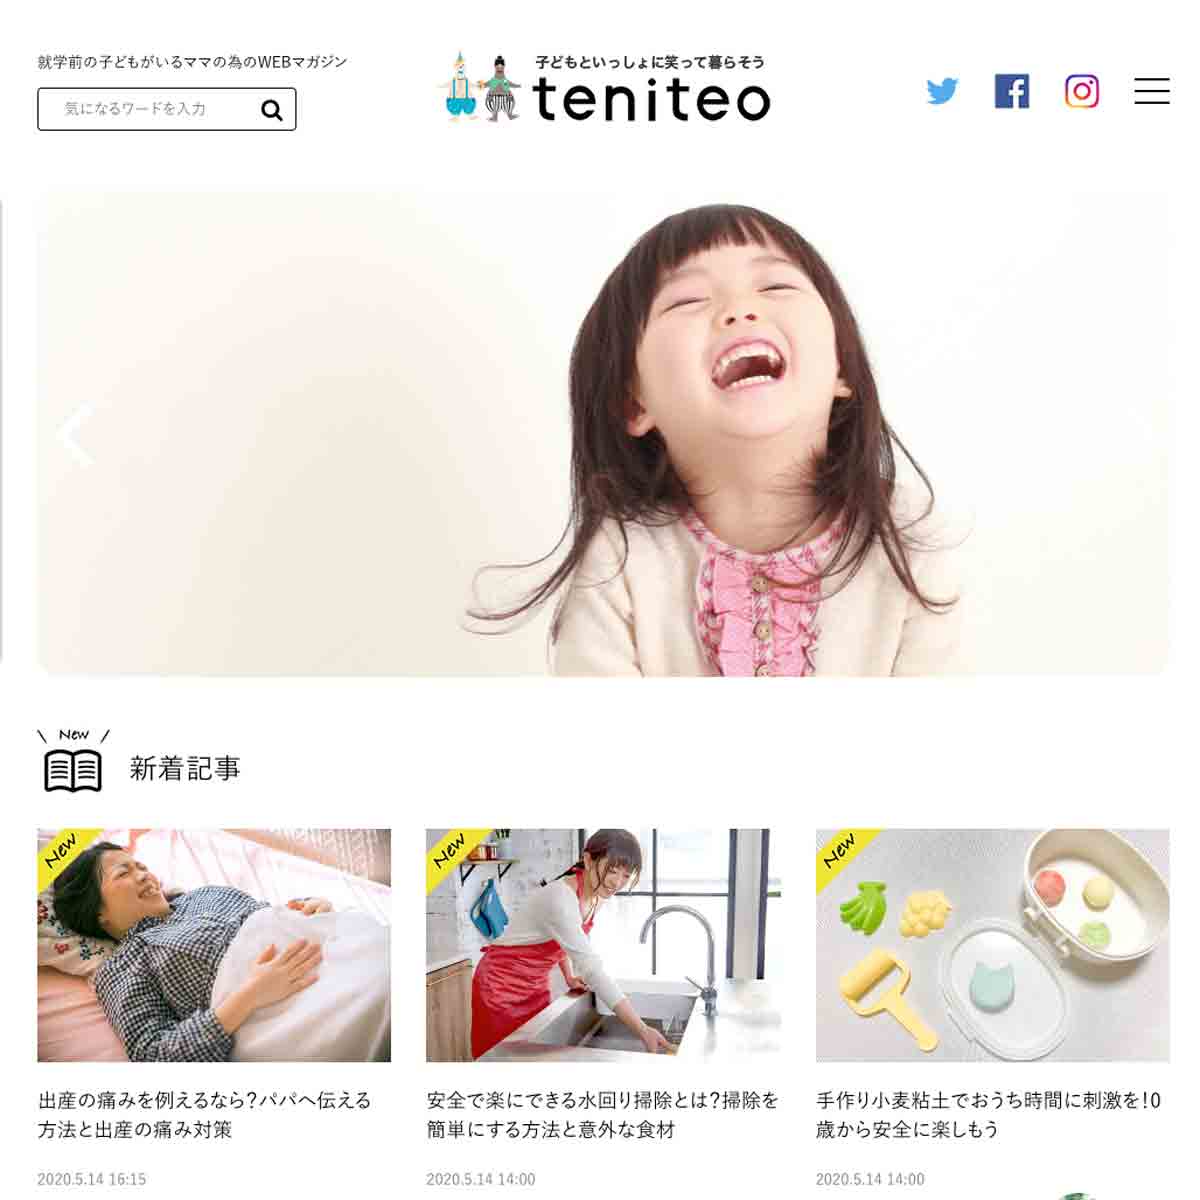 WEBマガジン“teniteo”にて『おうちでララちゃんランドセルを背負ってみよう！』キャンペーンをご紹介いただきました